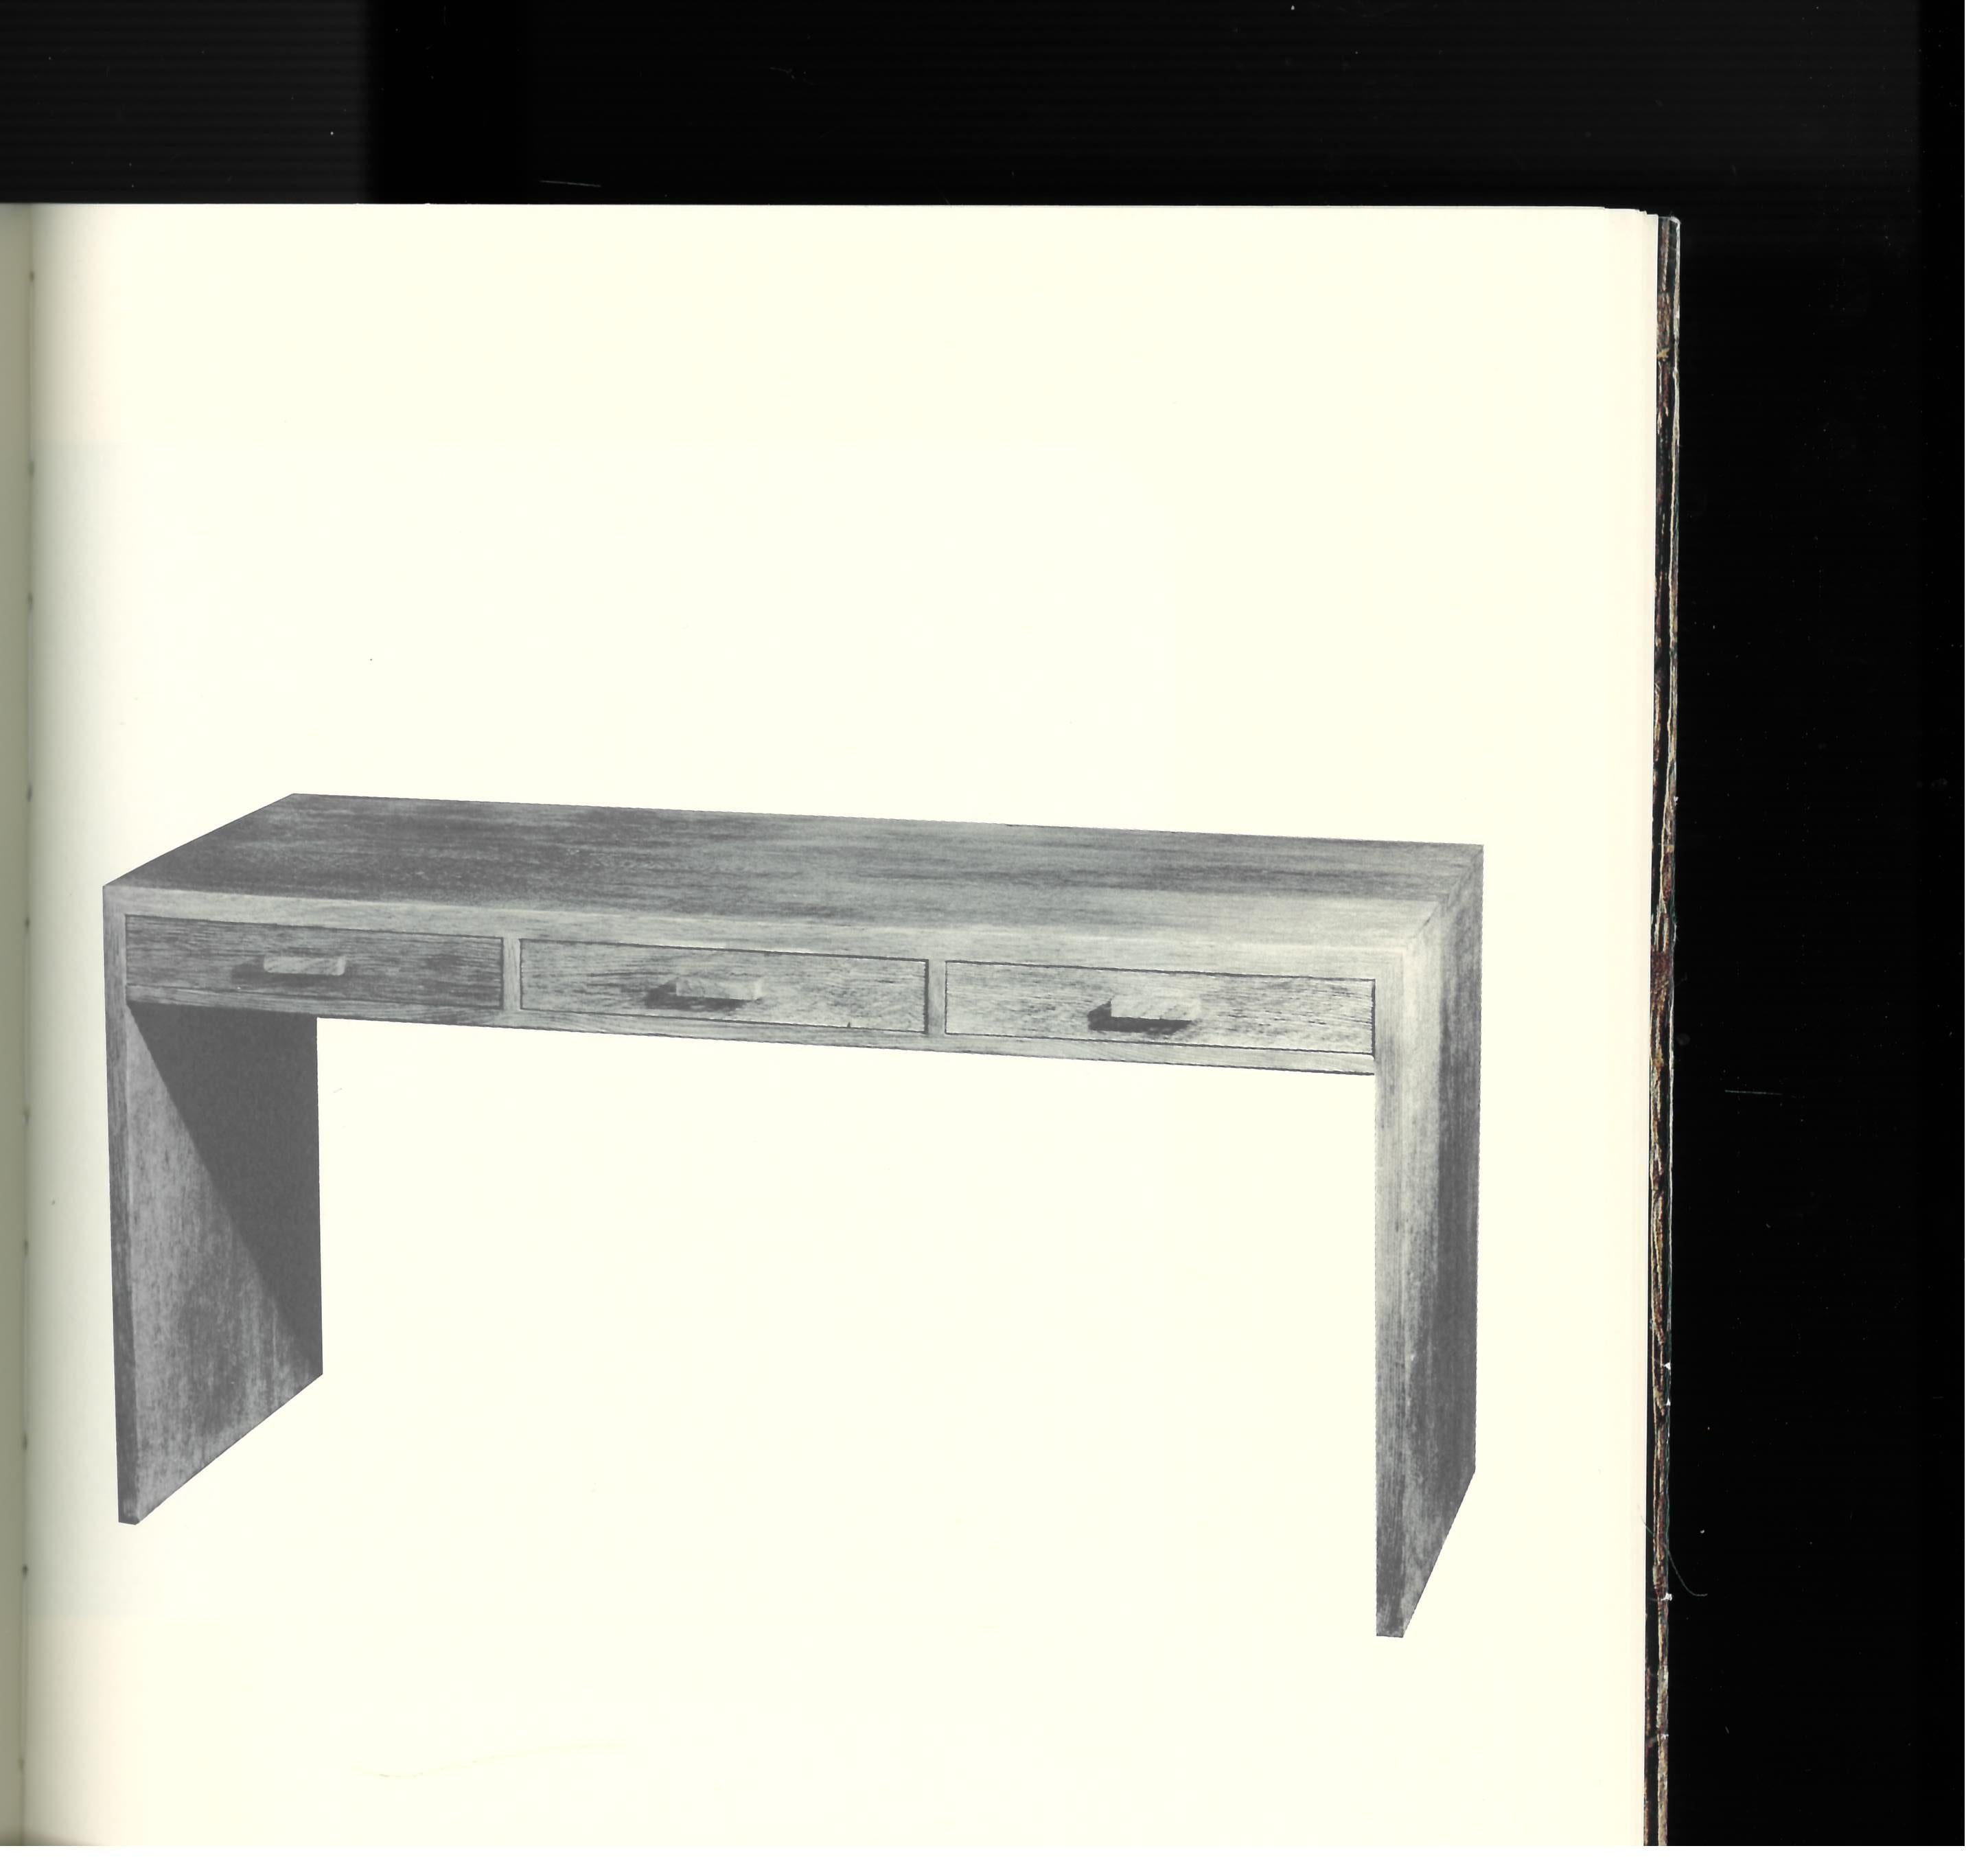 Il s'agit d'un catalogue produit par la Galerie Jacques de Vos en 1988 à l'occasion d'une exposition de meubles appartenant à diverses collections privées, donc rarement vus par le public, mais tous réalisés par le très recherché designer